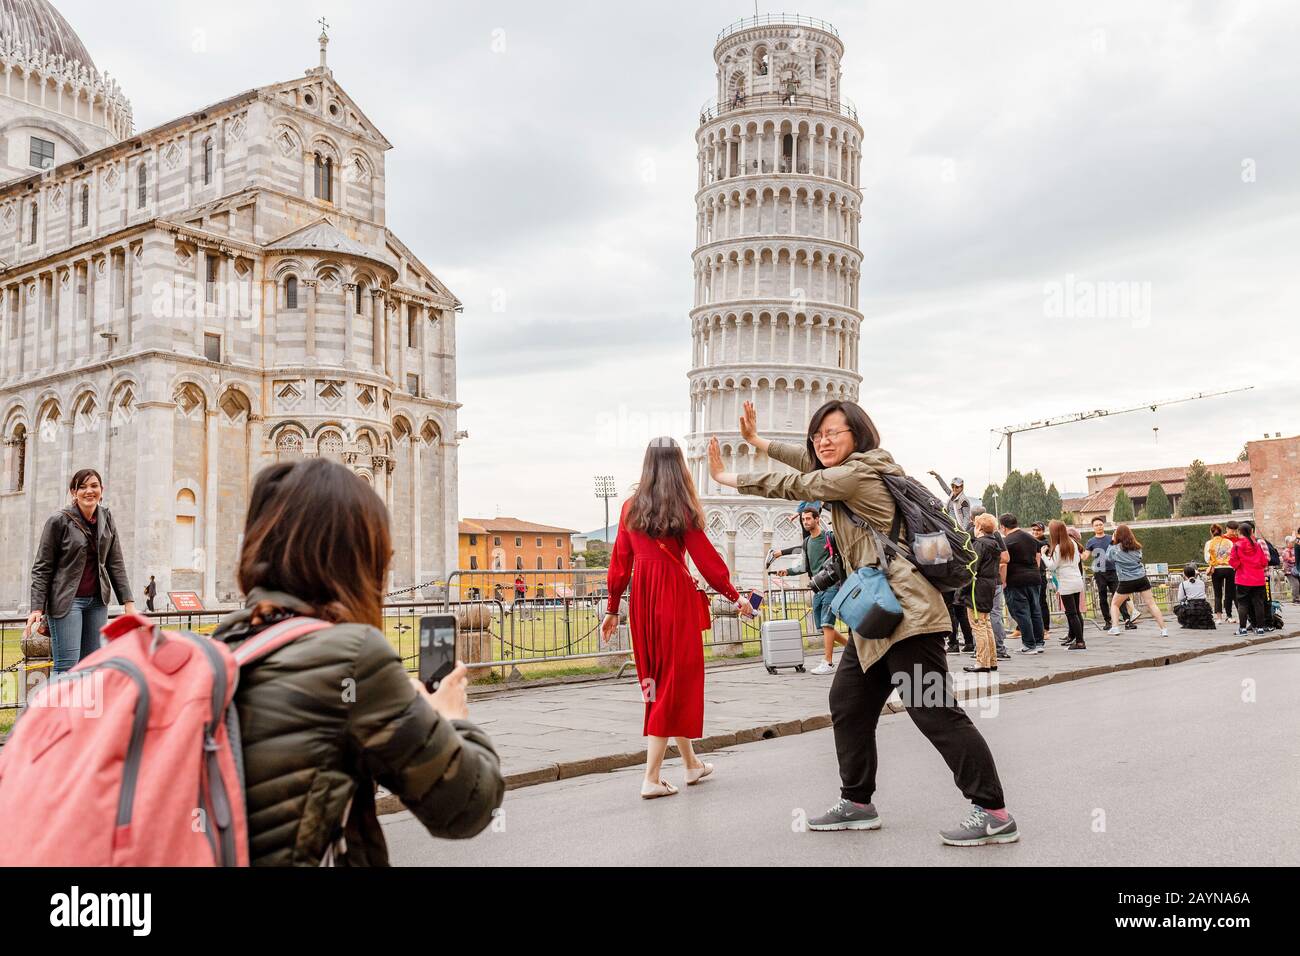 16 DE OCTUBRE de 2018, PISA, ITALIA: Multitud de turistas que hacen poses graciosas frente a la famosa torre inclinada en Pisa Foto de stock